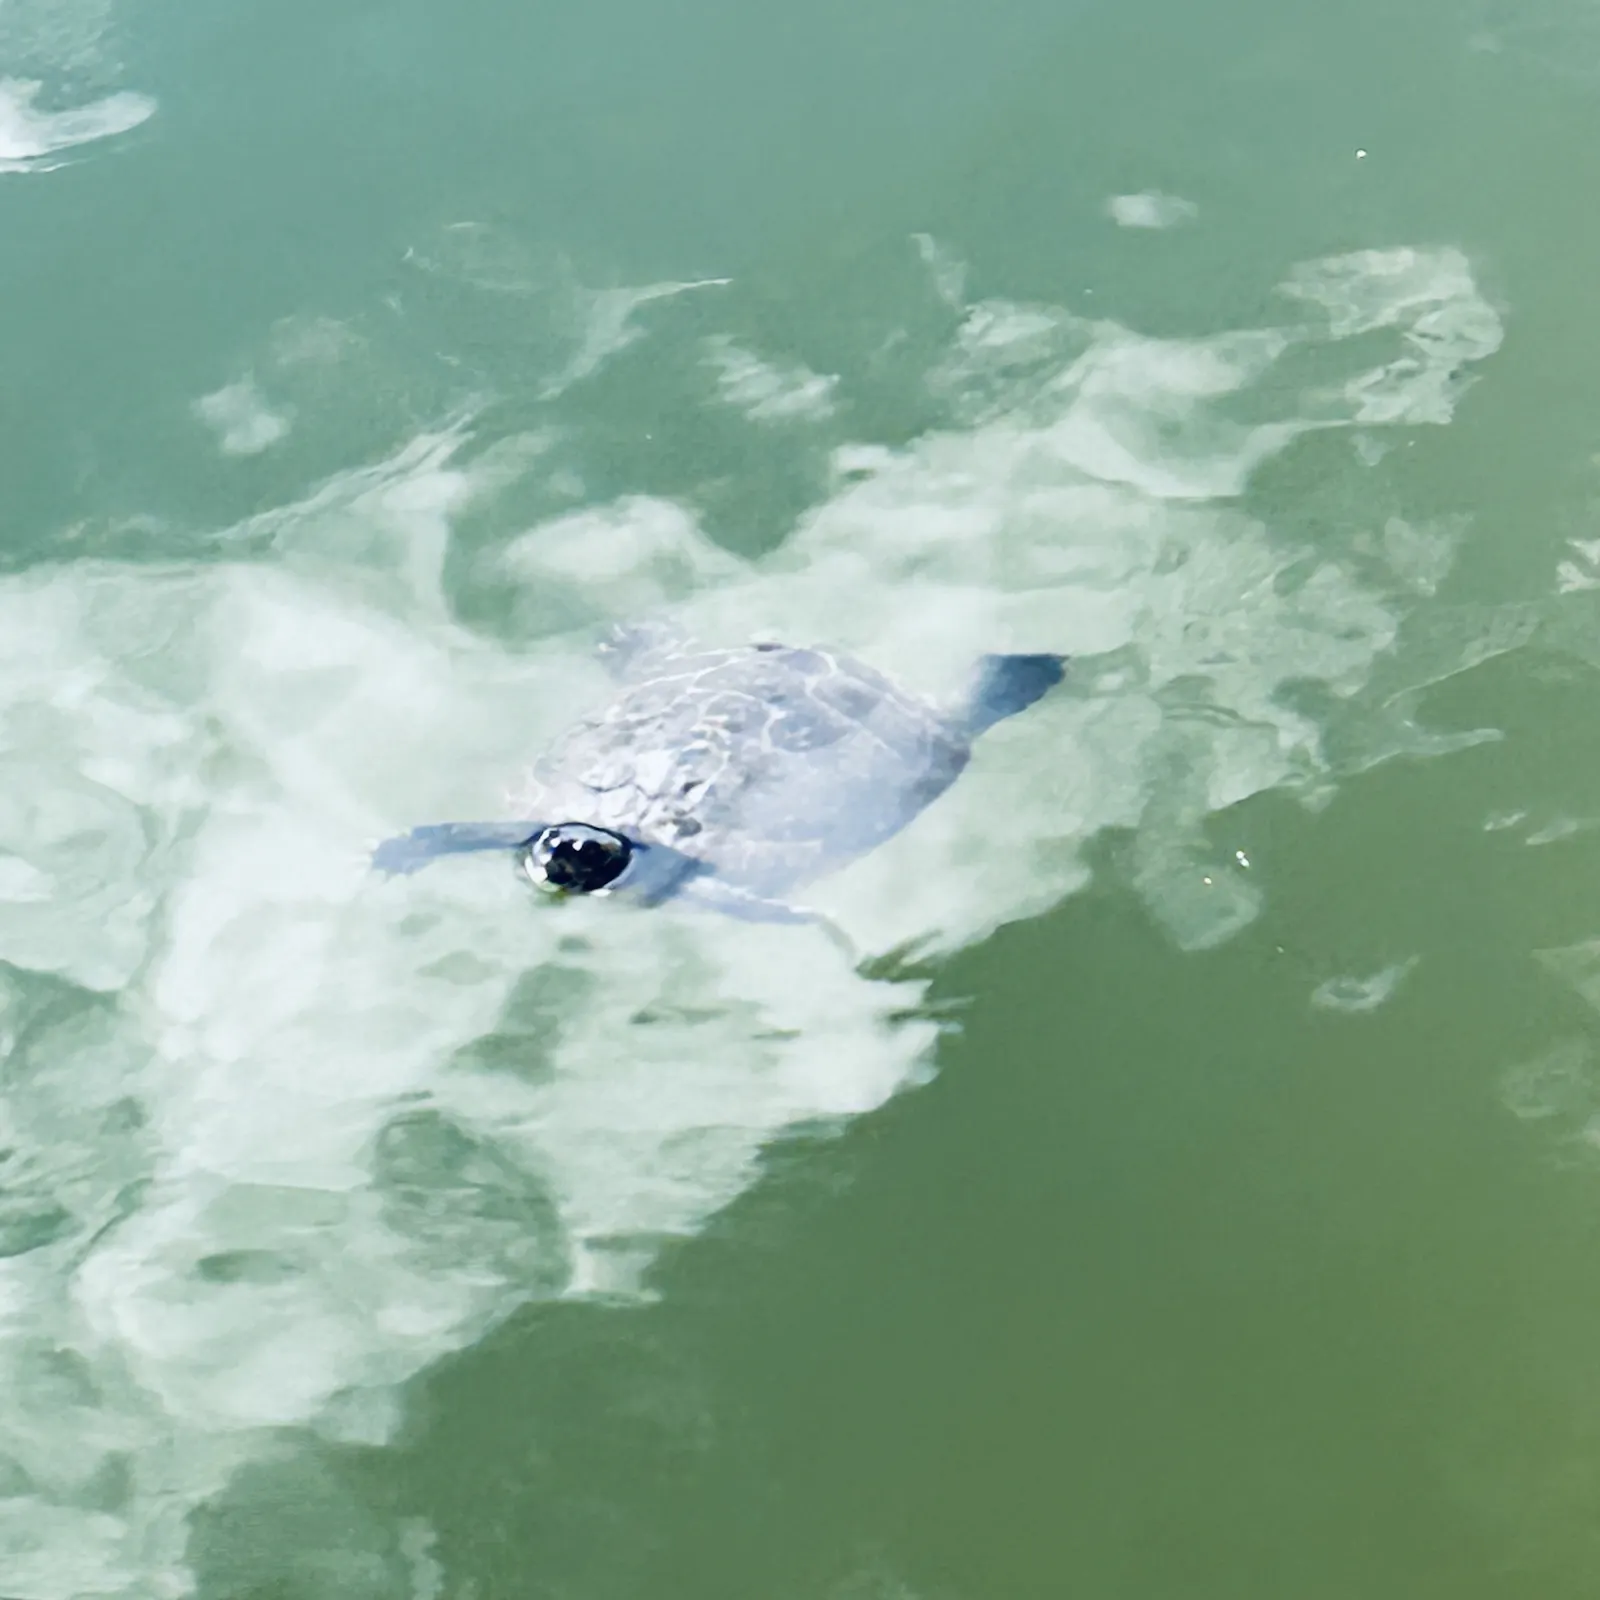 Schildkröte schwimmt in grünem Gewässer auf Betrachtende zu